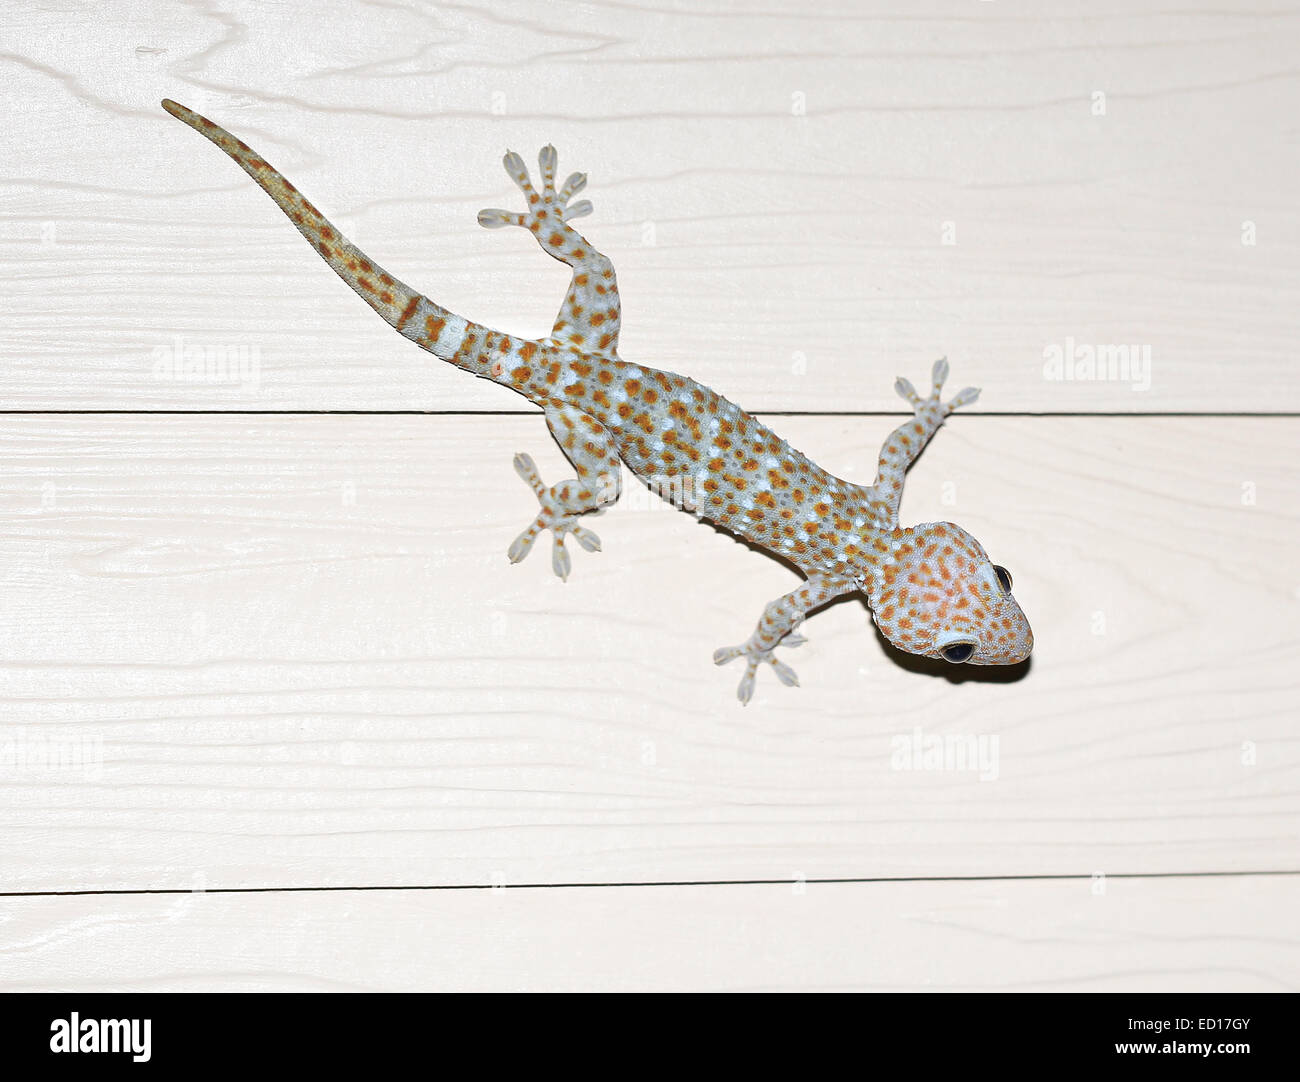 schöne Fotos von exotischen Tokay Gecko an der Wand Stockfoto